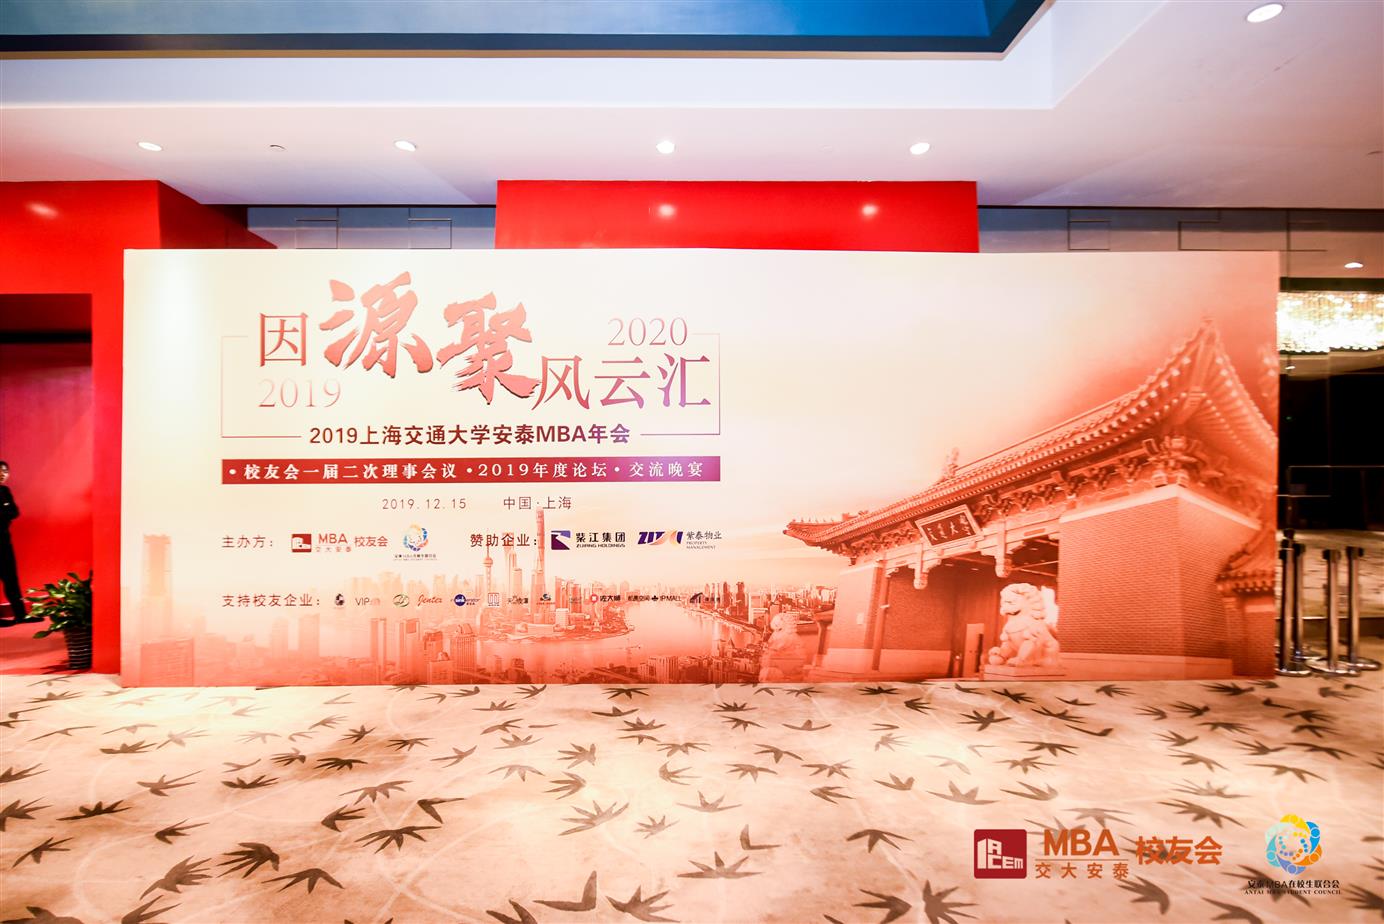 活动创意灯光秀布置 上海徐汇会议投影仪租赁公司